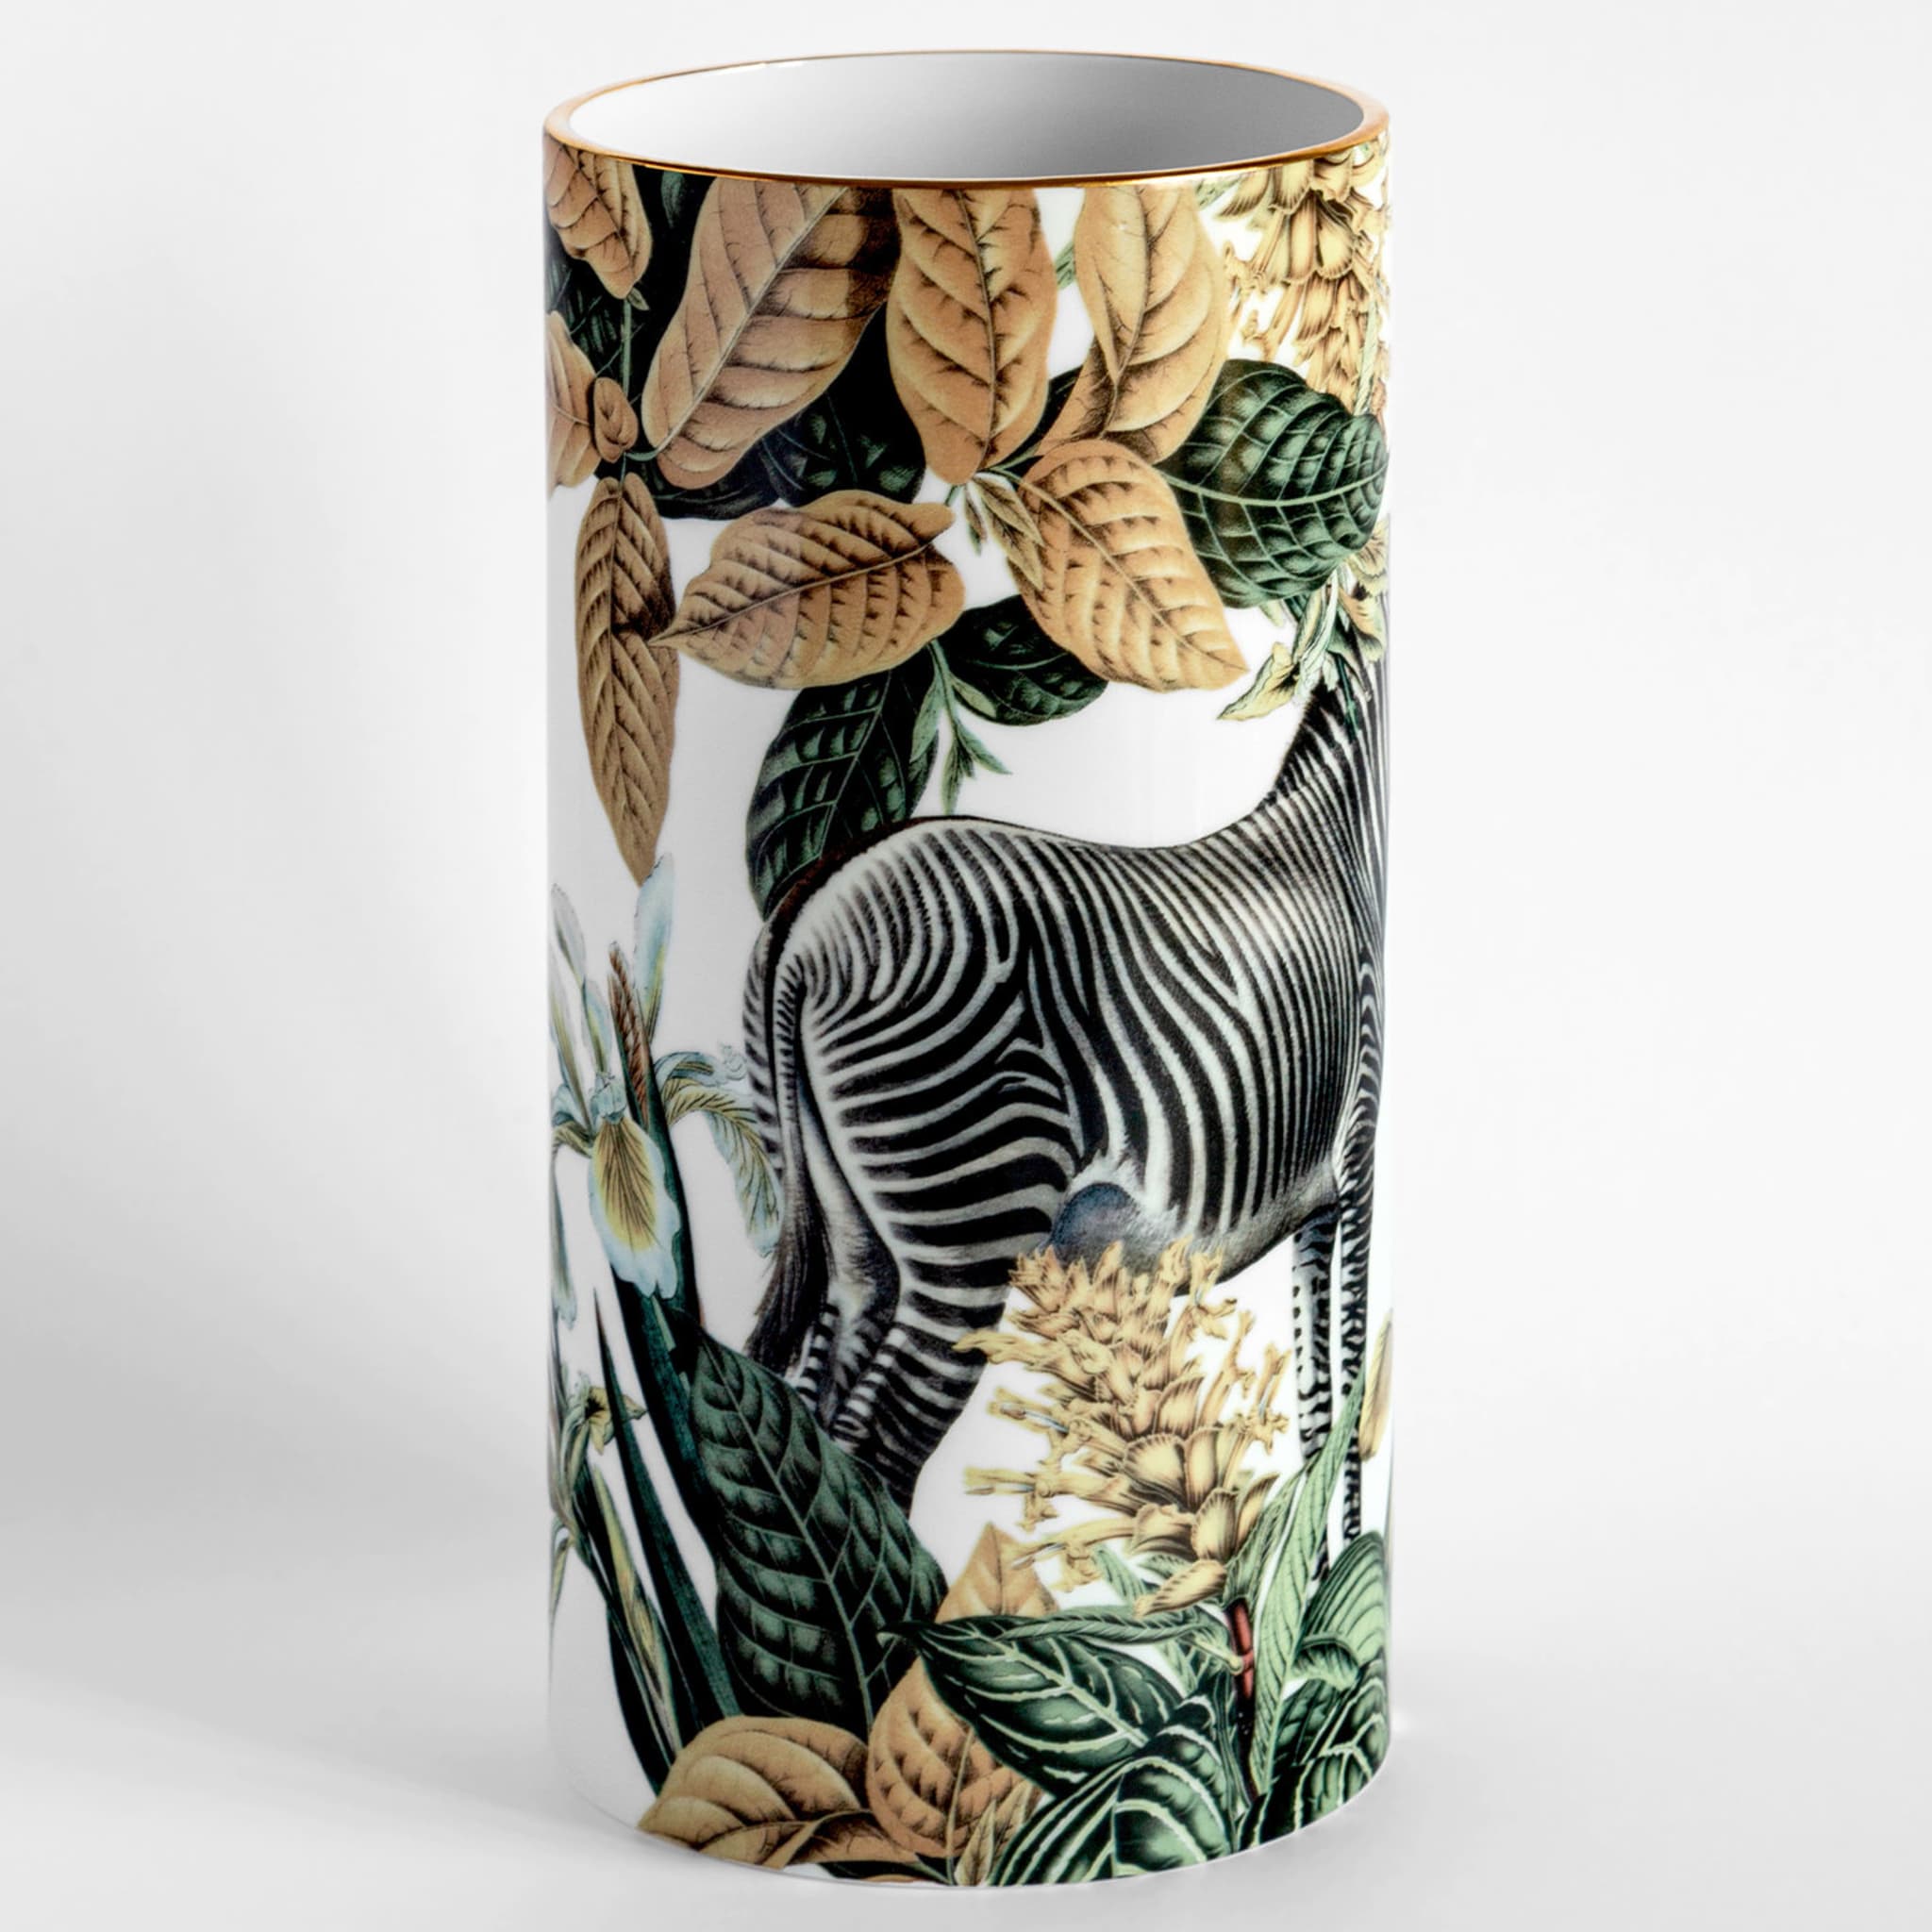 Animalia Porcelain Cylindrical Vase With Zebra - Alternative view 1